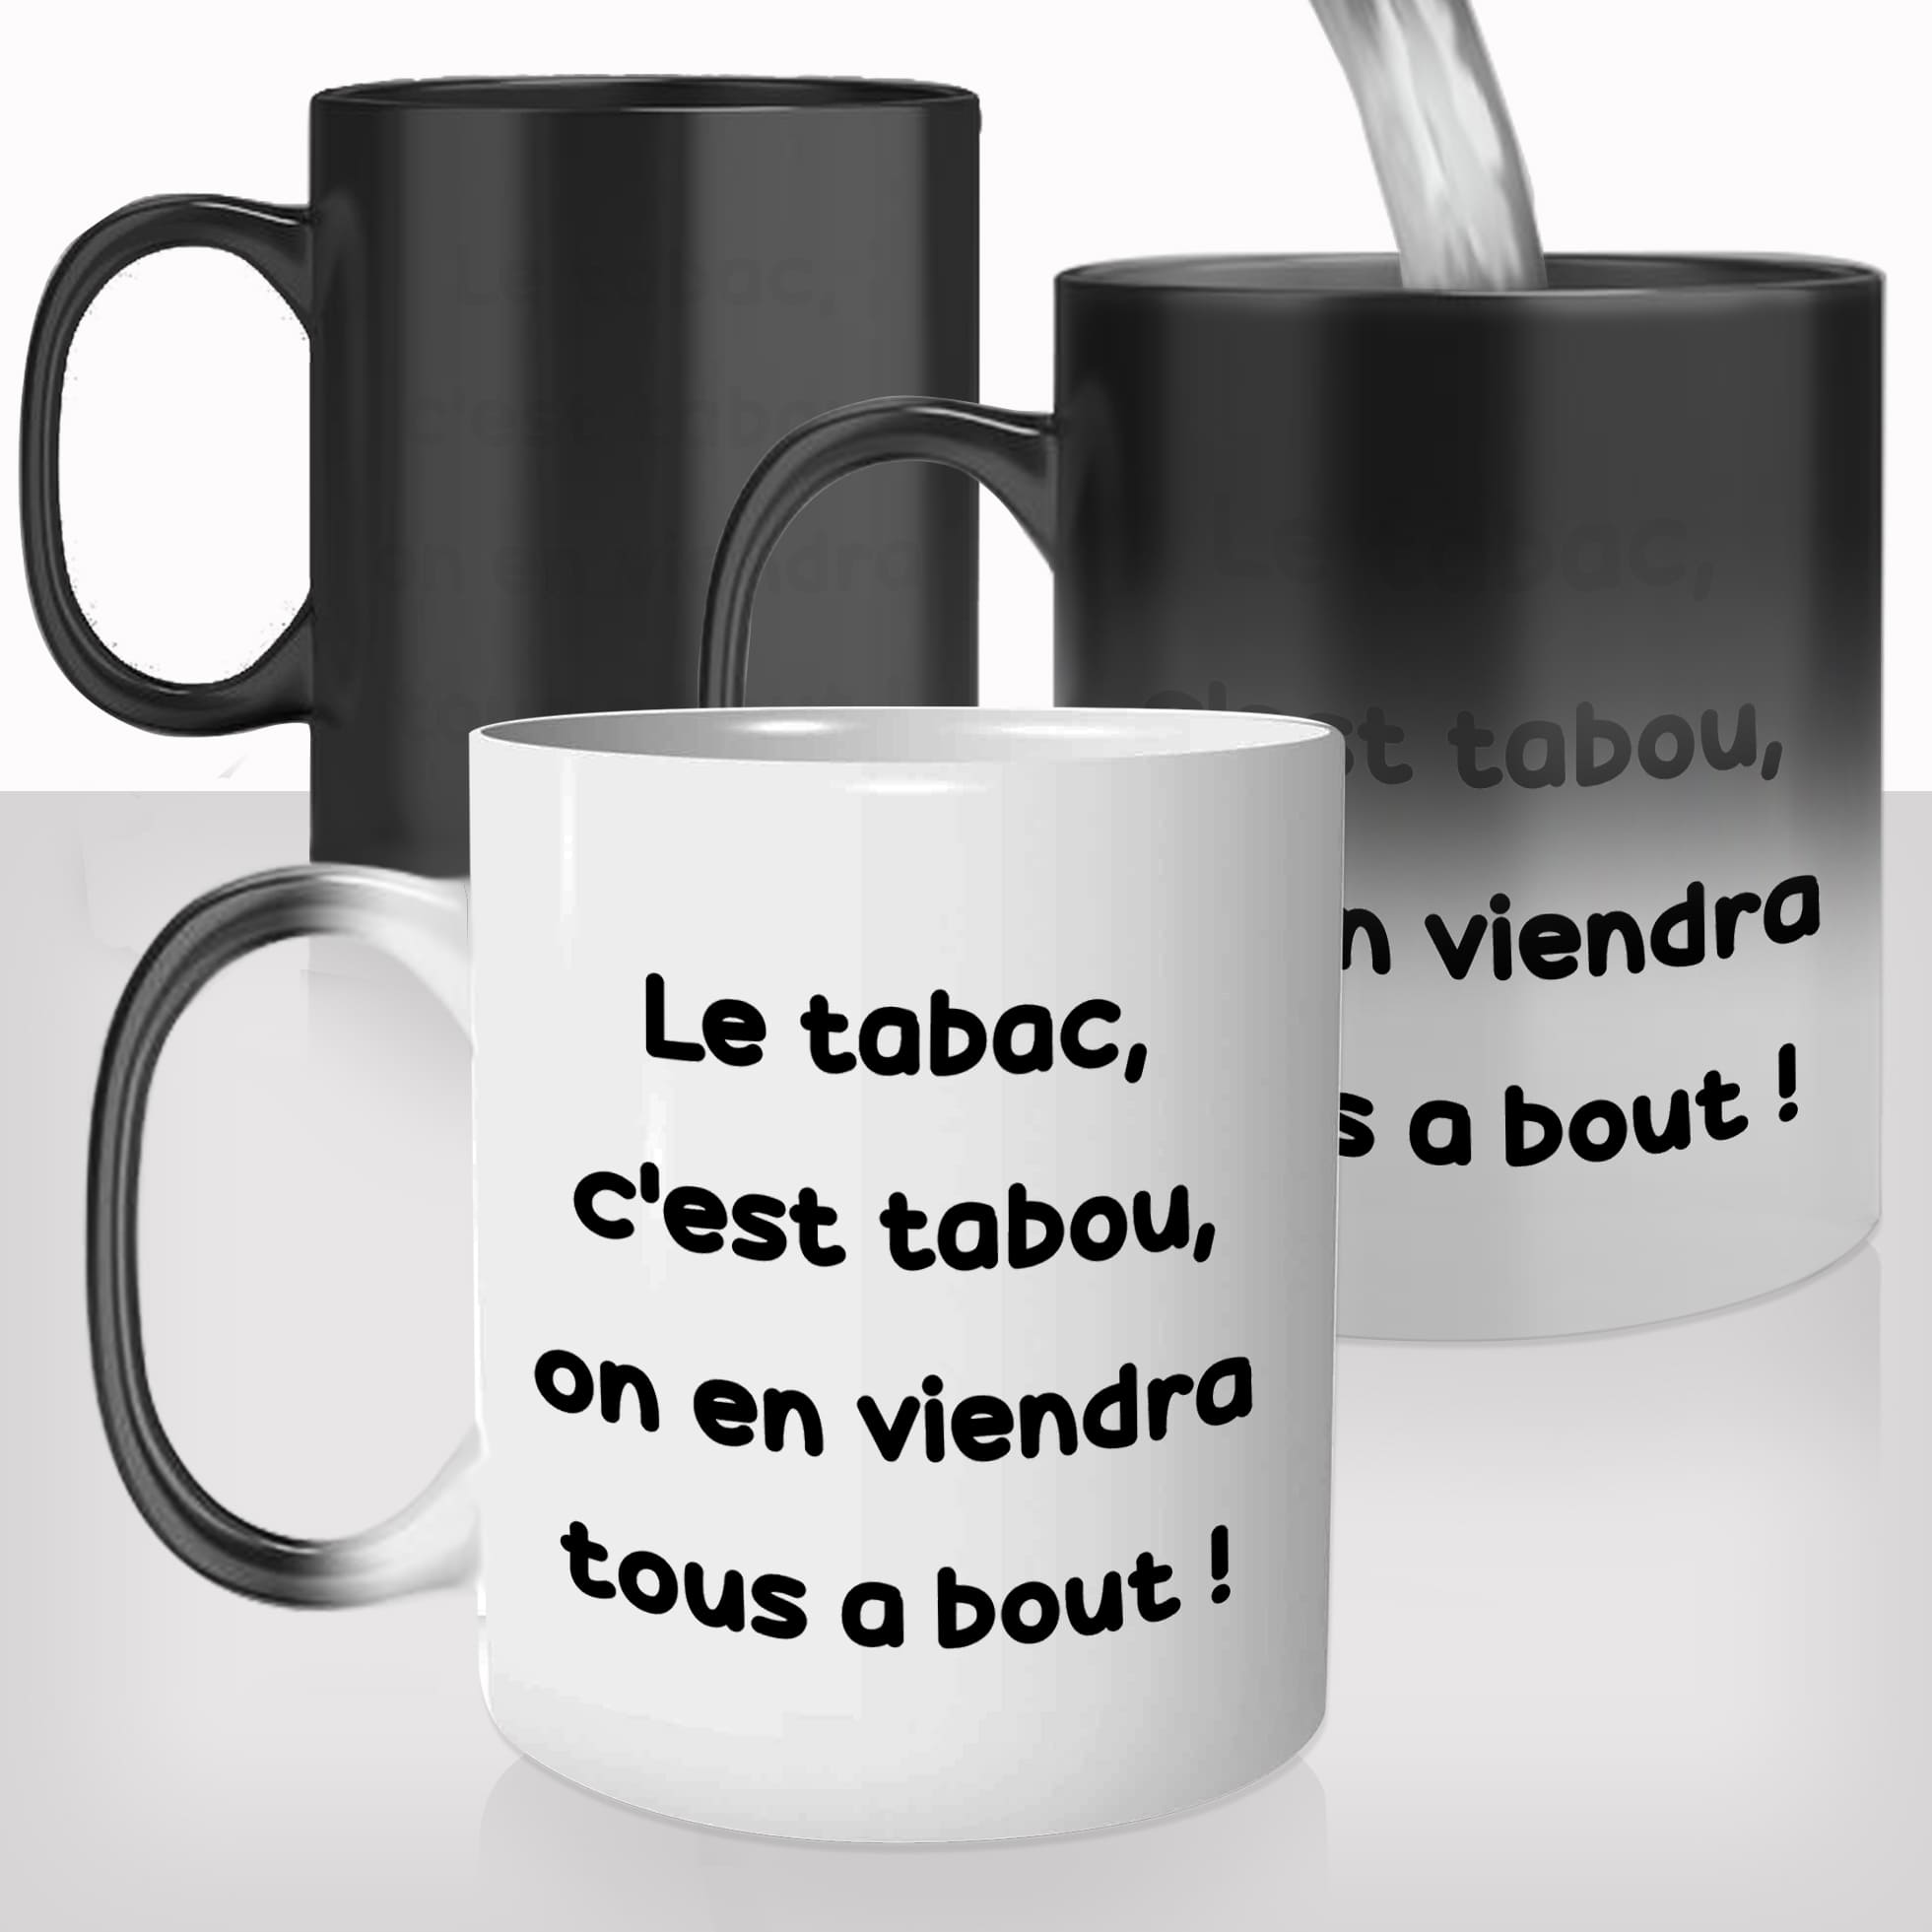 mug-magique-tasse-magic-thermo-reactif-film-culte-francais-le-tabac-cest-tabou-le-pacte-drole-citation-fumeur-offrir-cadeau-café-thé-original